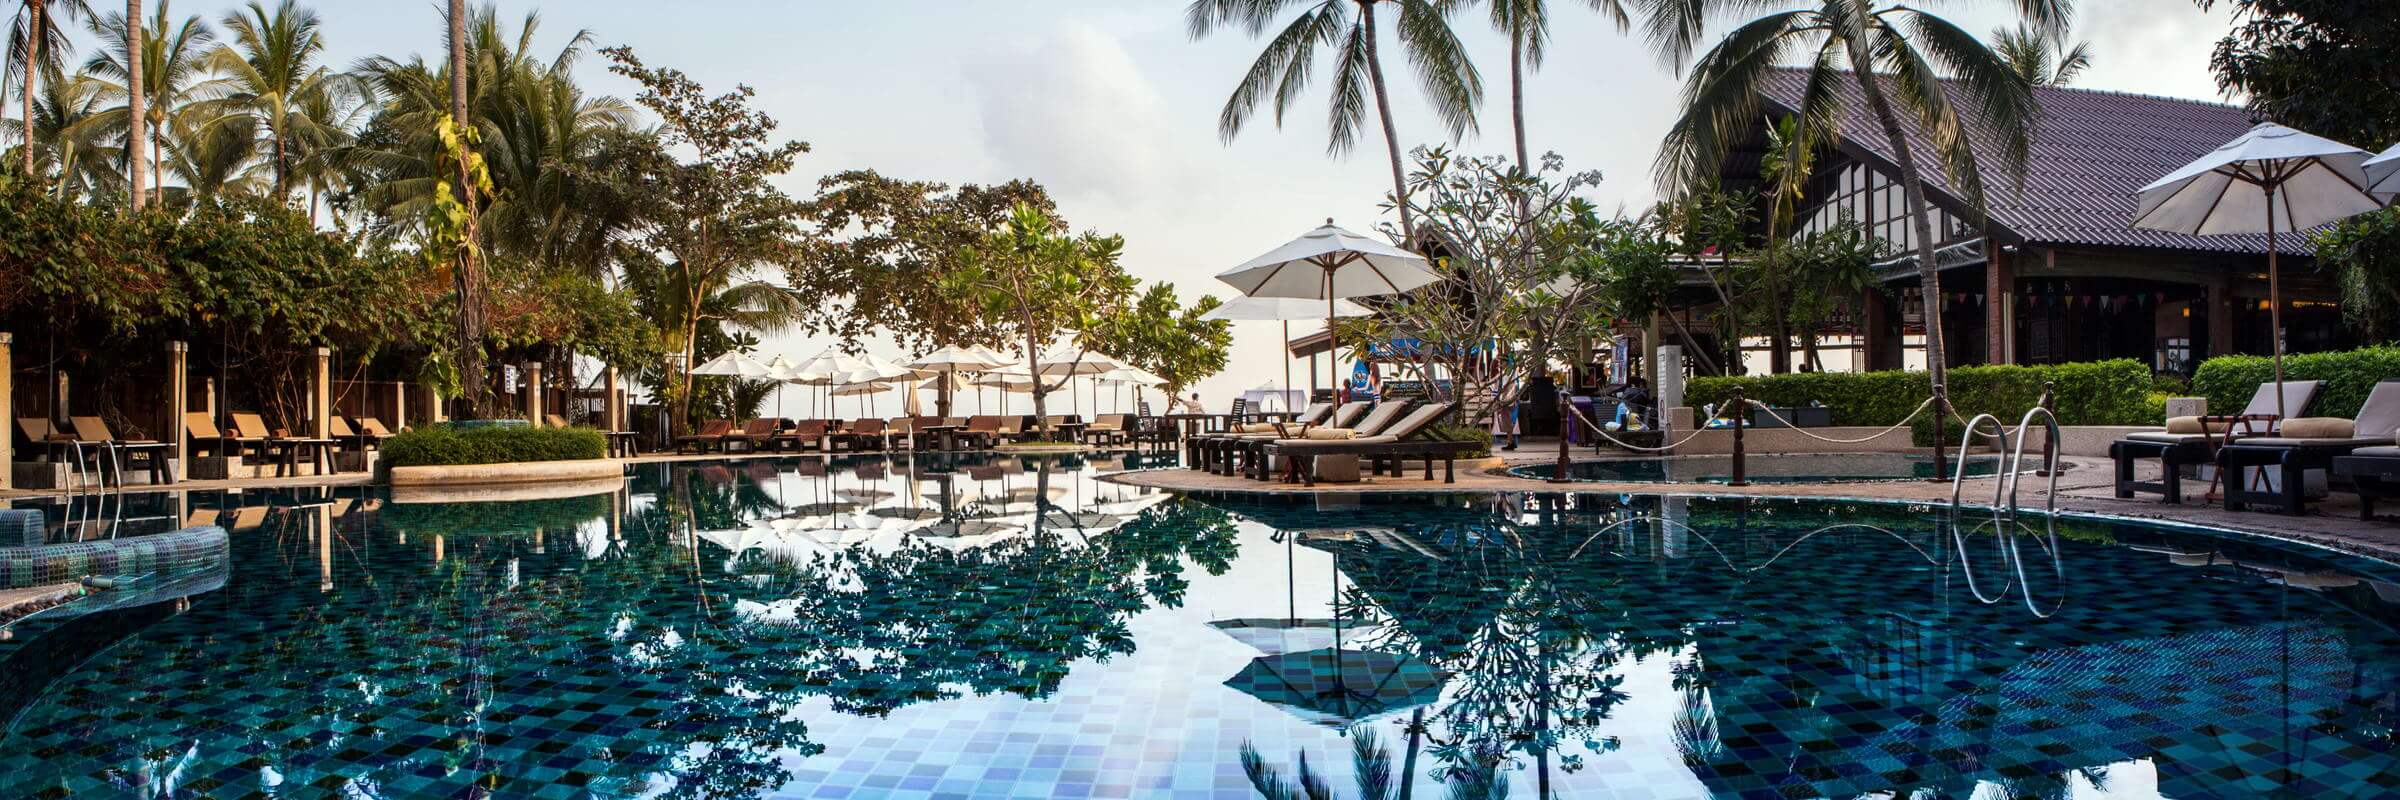 Ausblick auf den schön angelegten Poolbereich mit Sonnenterrasse des Peace Resorts auf Koh Samui, Thailand.